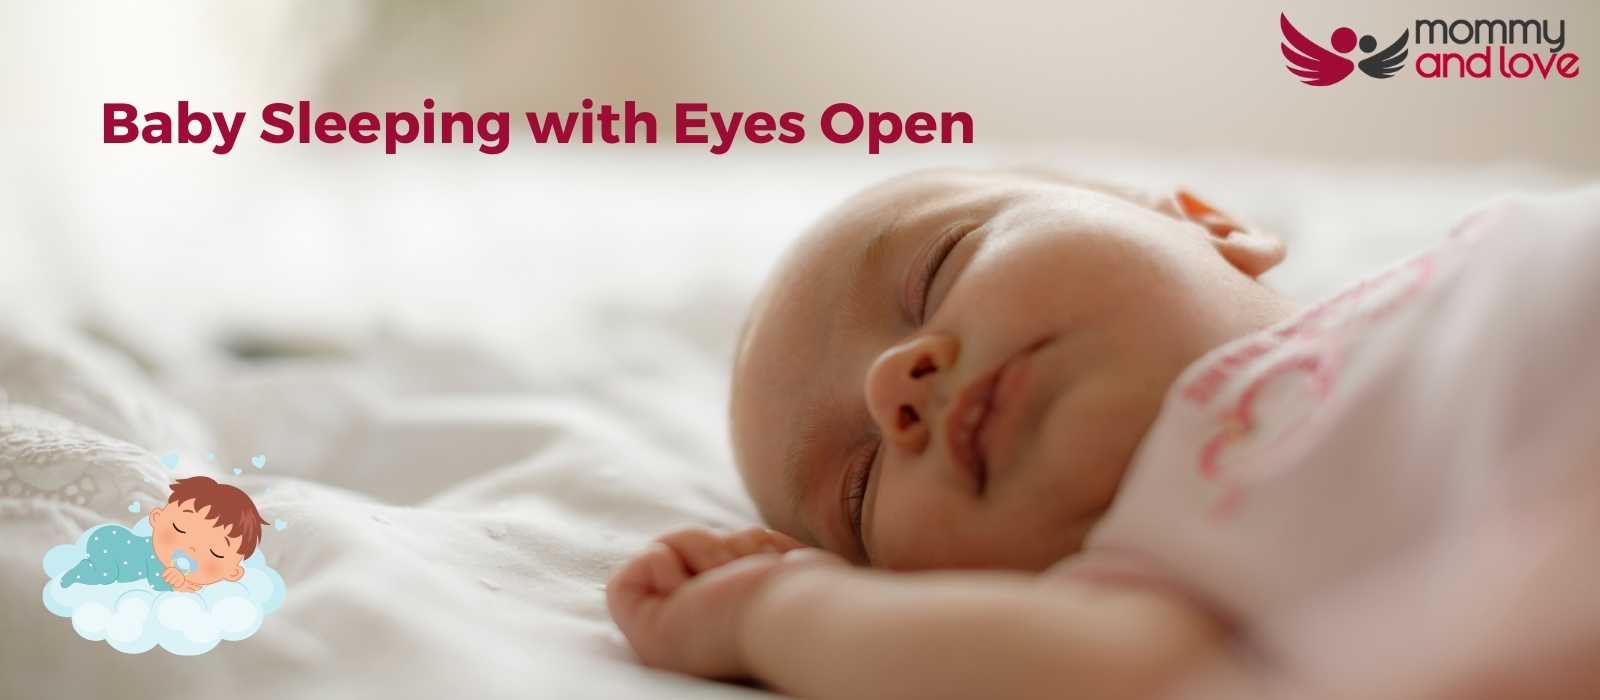 Baby Sleeping with Eyes Open